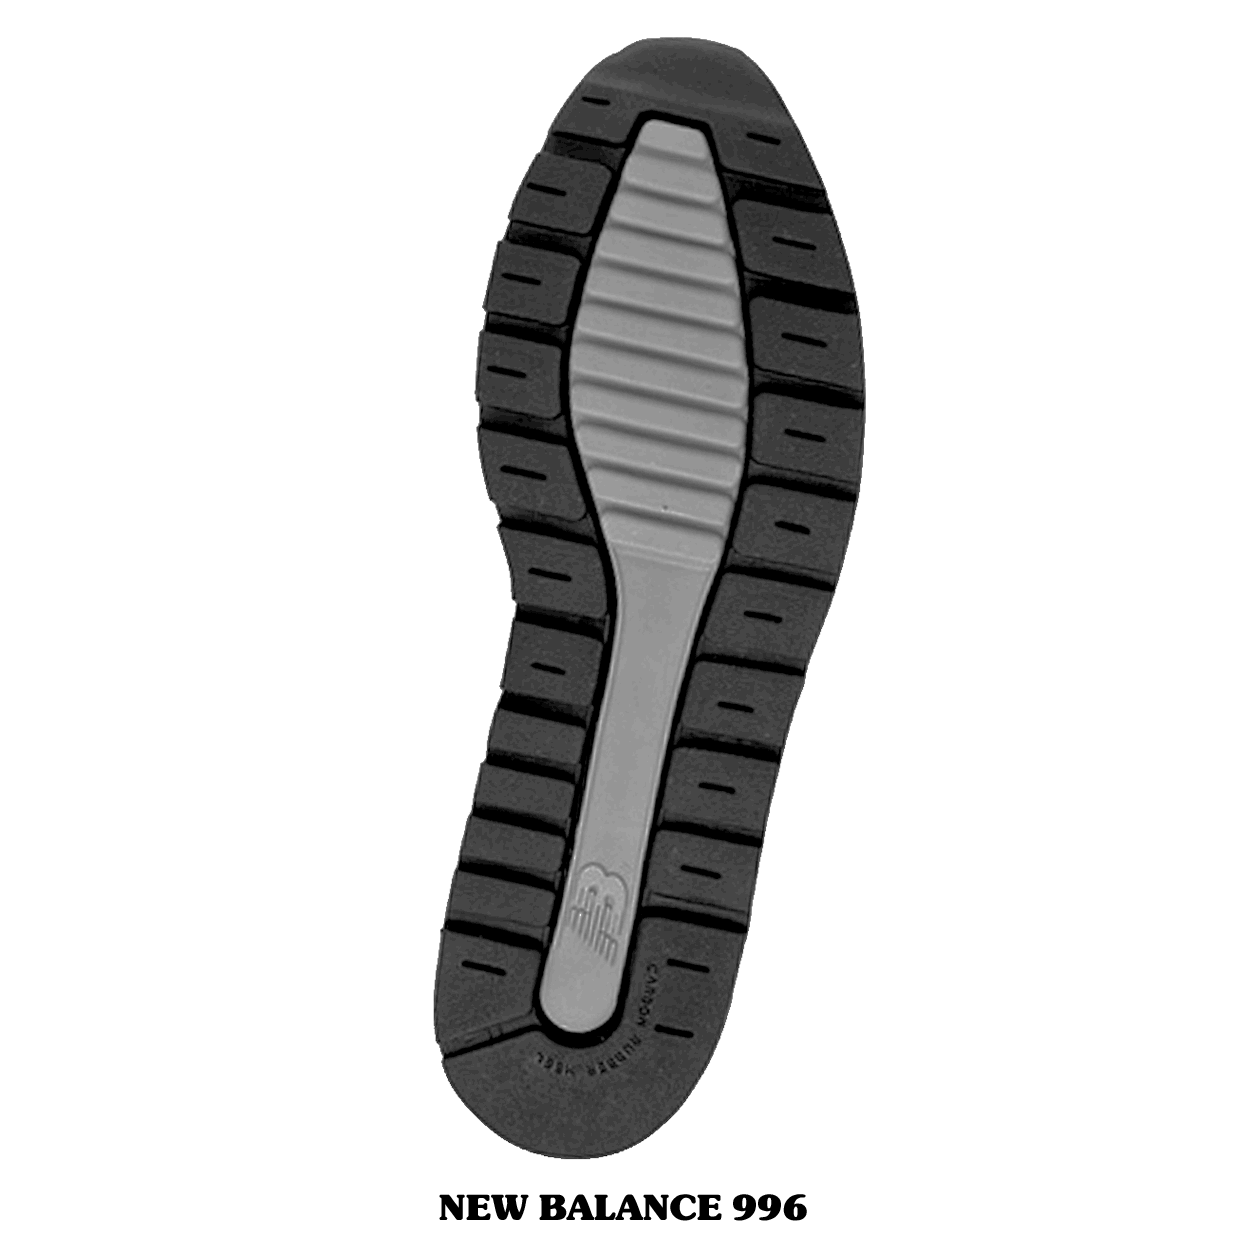 靴拓 魚拓ならぬ靴拓 メーカーのこだわりを見ることができるシューズのソール エアロビクス フィットネス情報